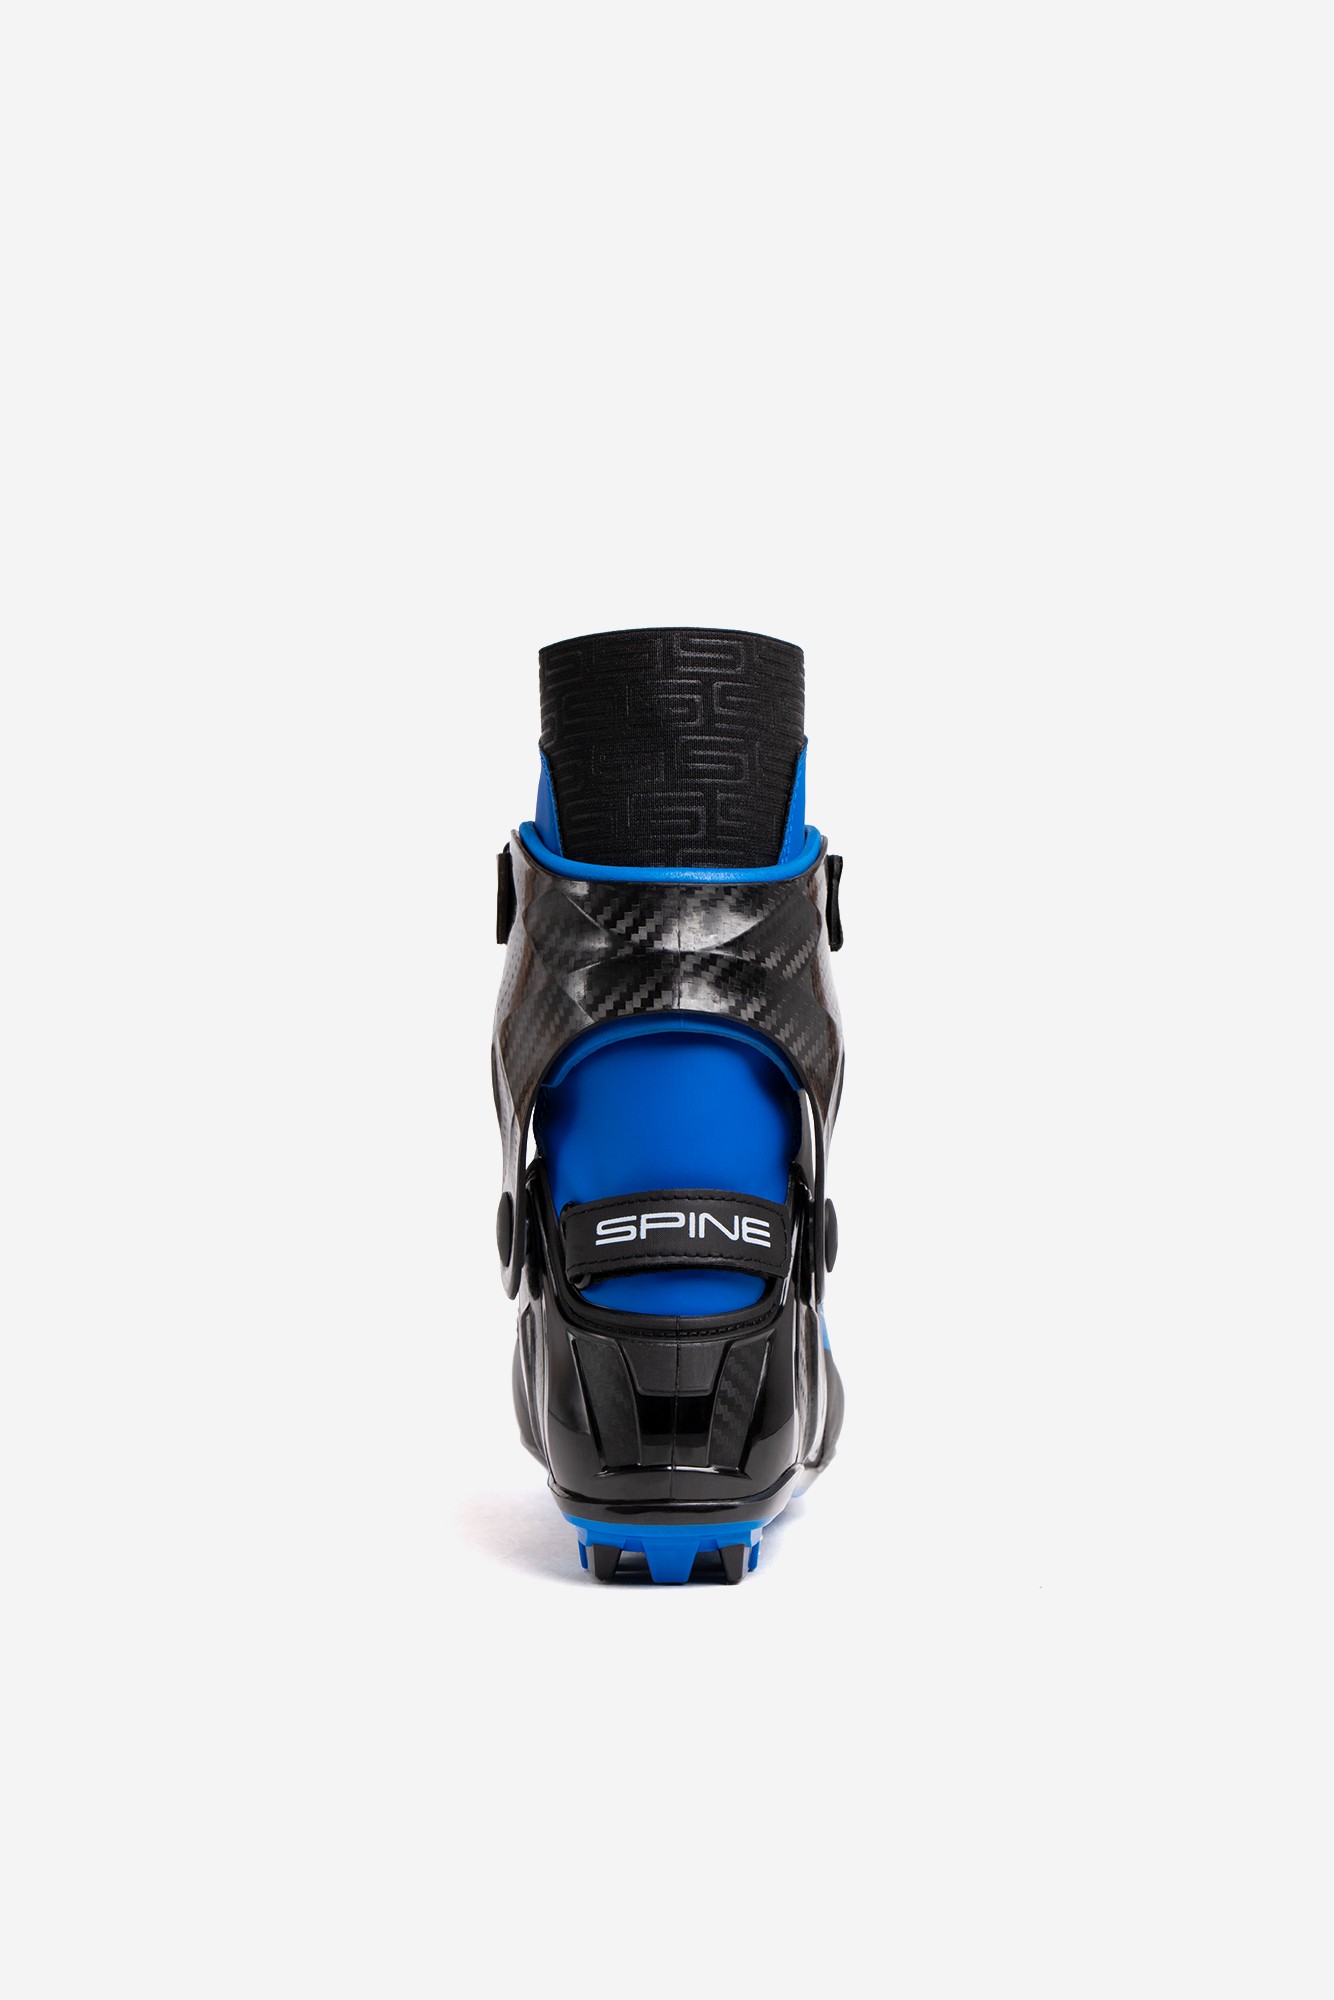 Лыжные ботинки NNN Spine Concept Carbon Skate 298-22 черный\синий 1334_2000